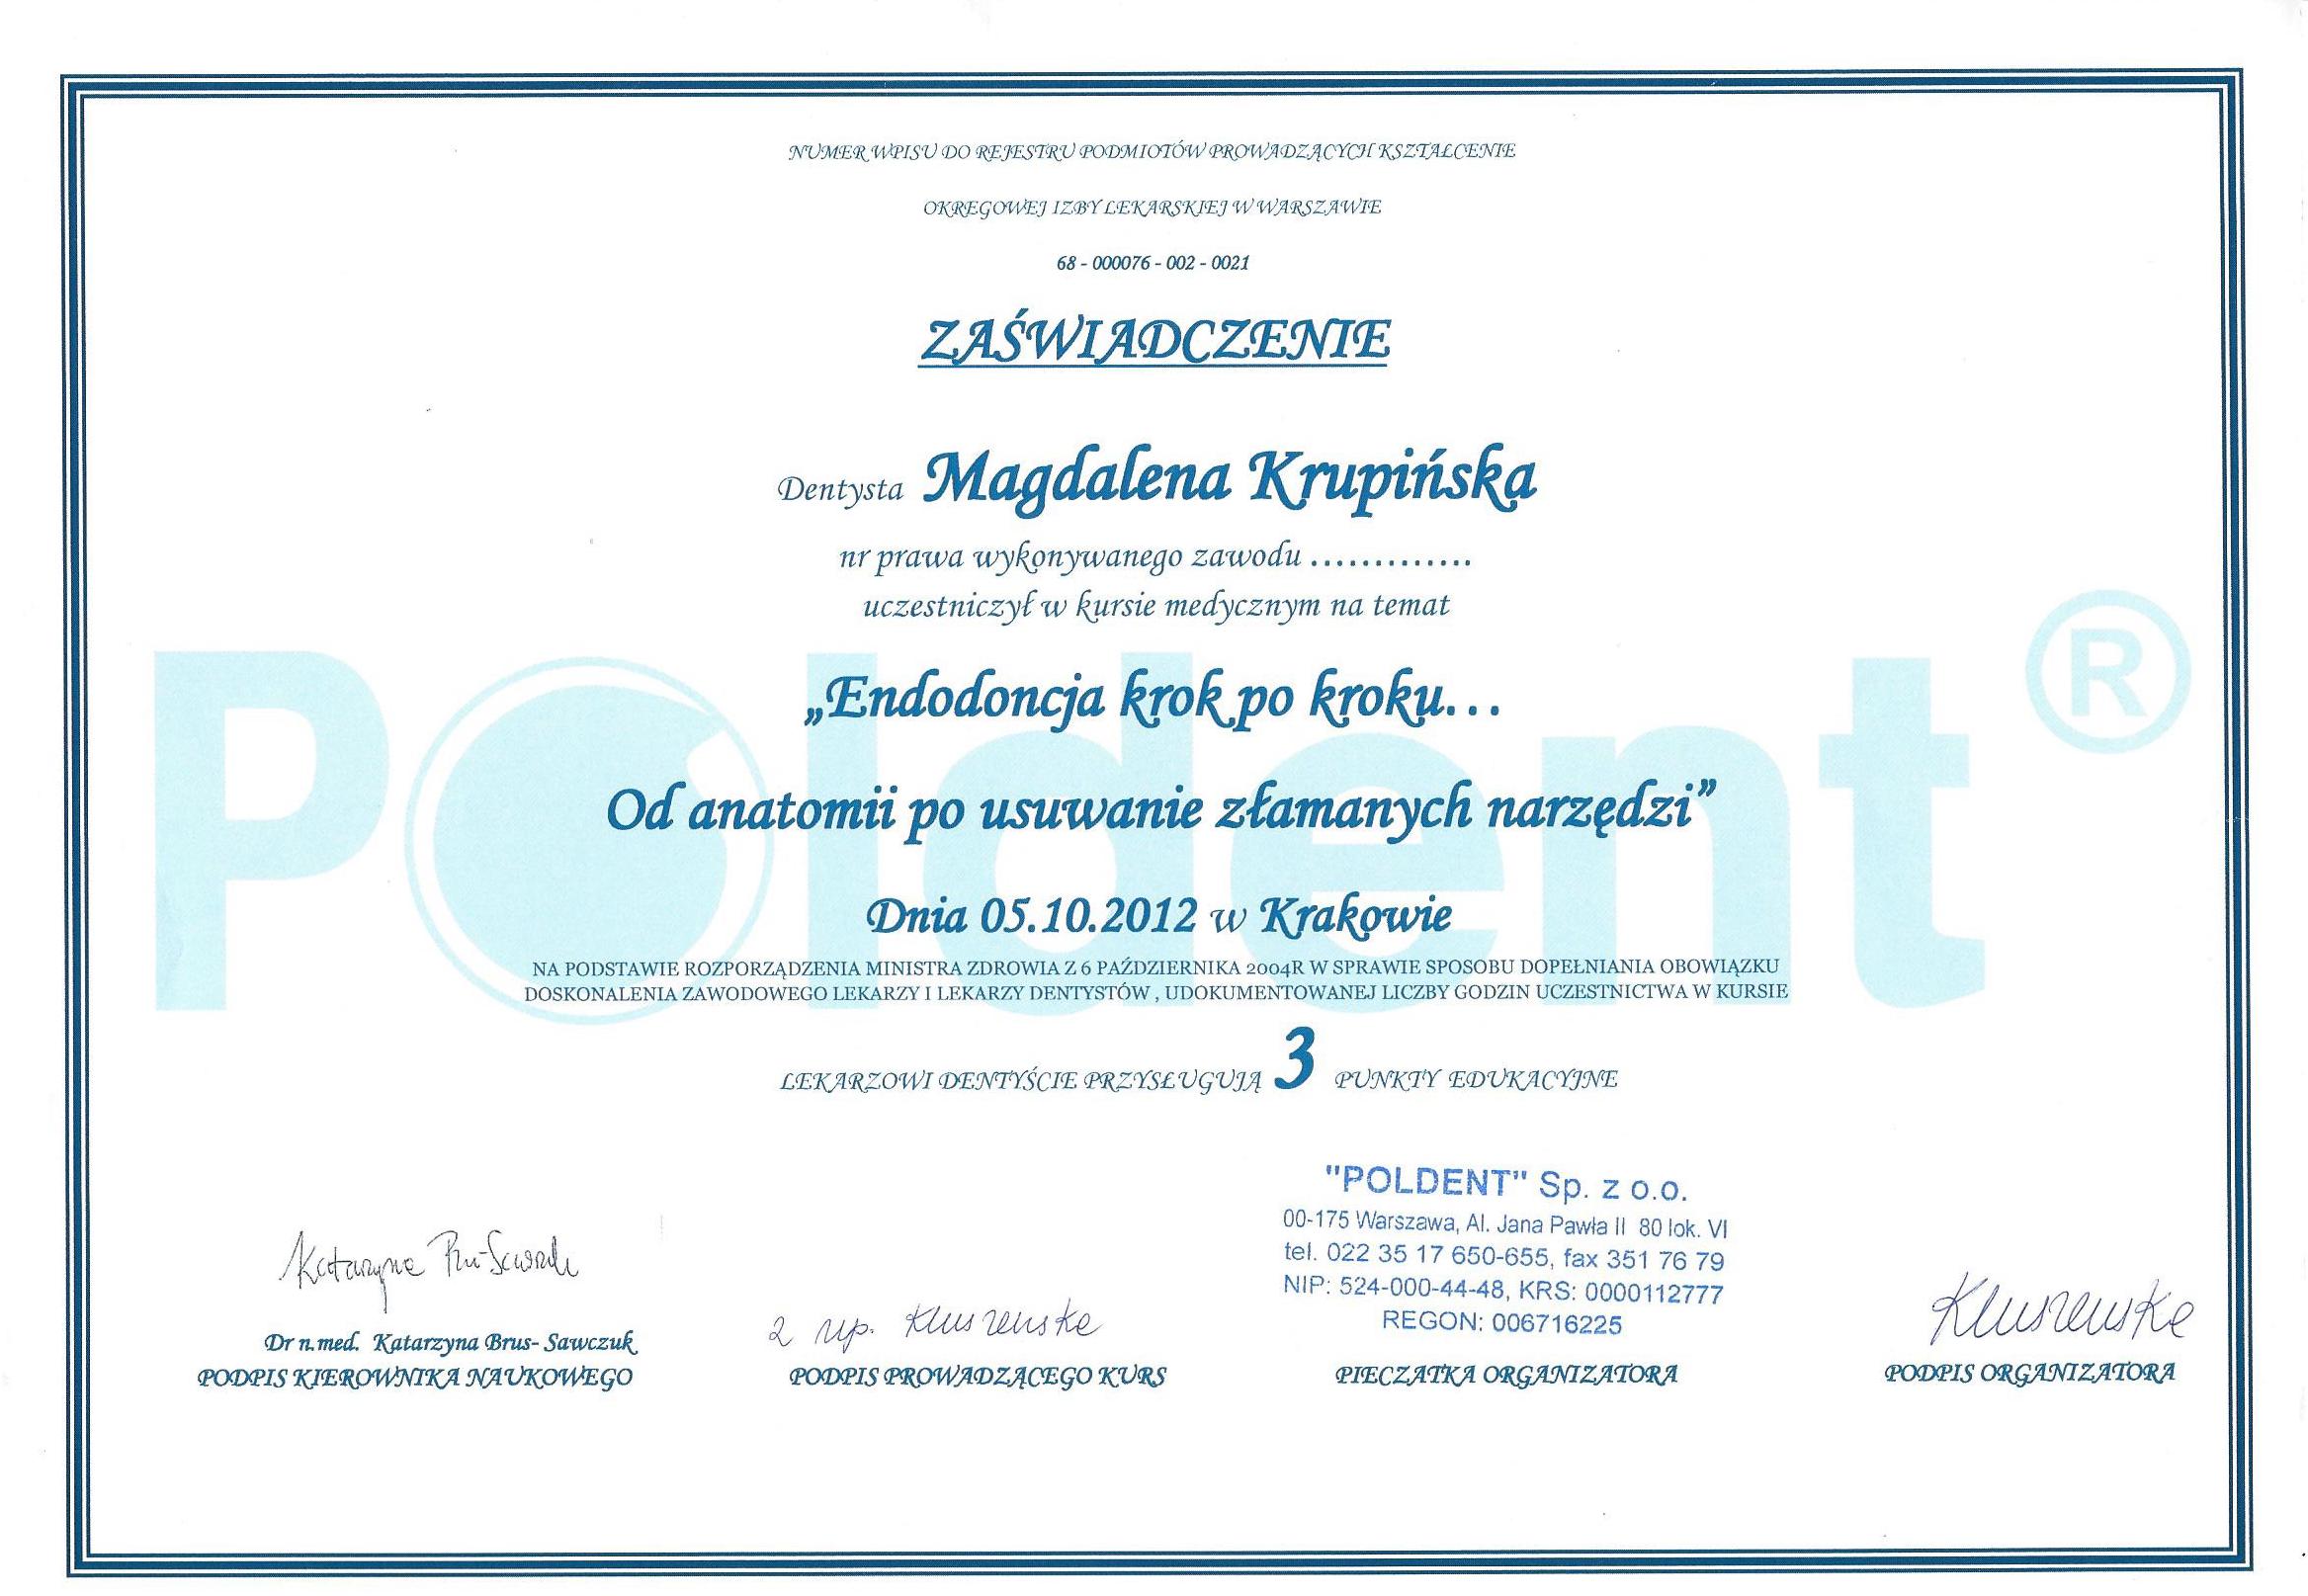 Magdalena Krupińska certyfikat 33